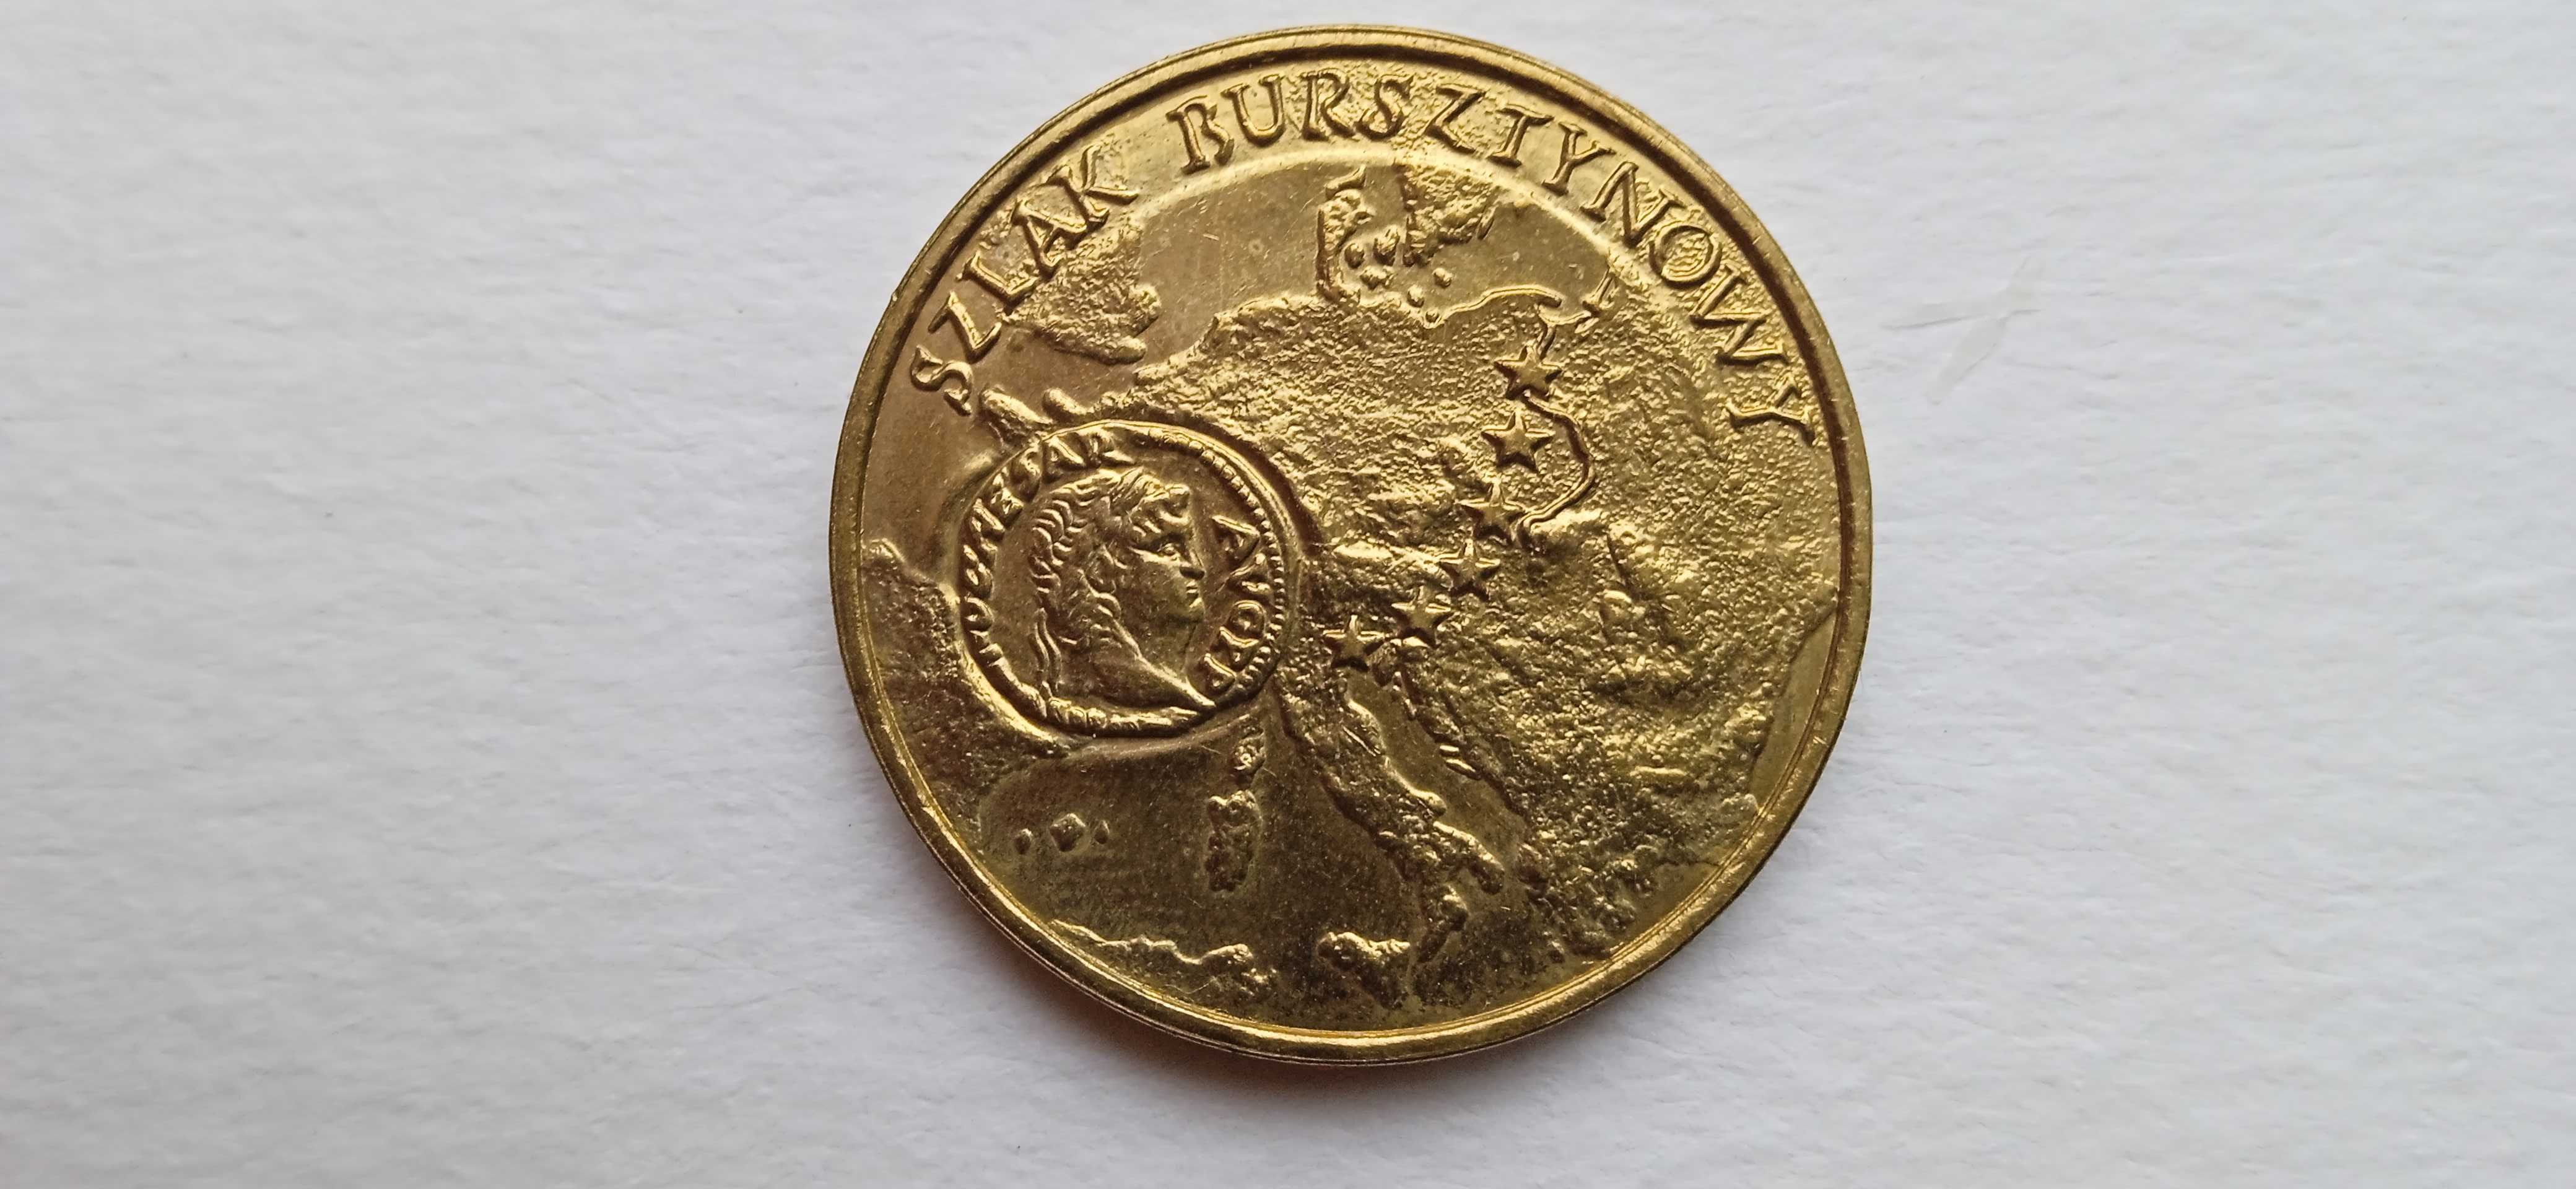 Moneta 2zł Szlak Bursztynowy 2001 rok.